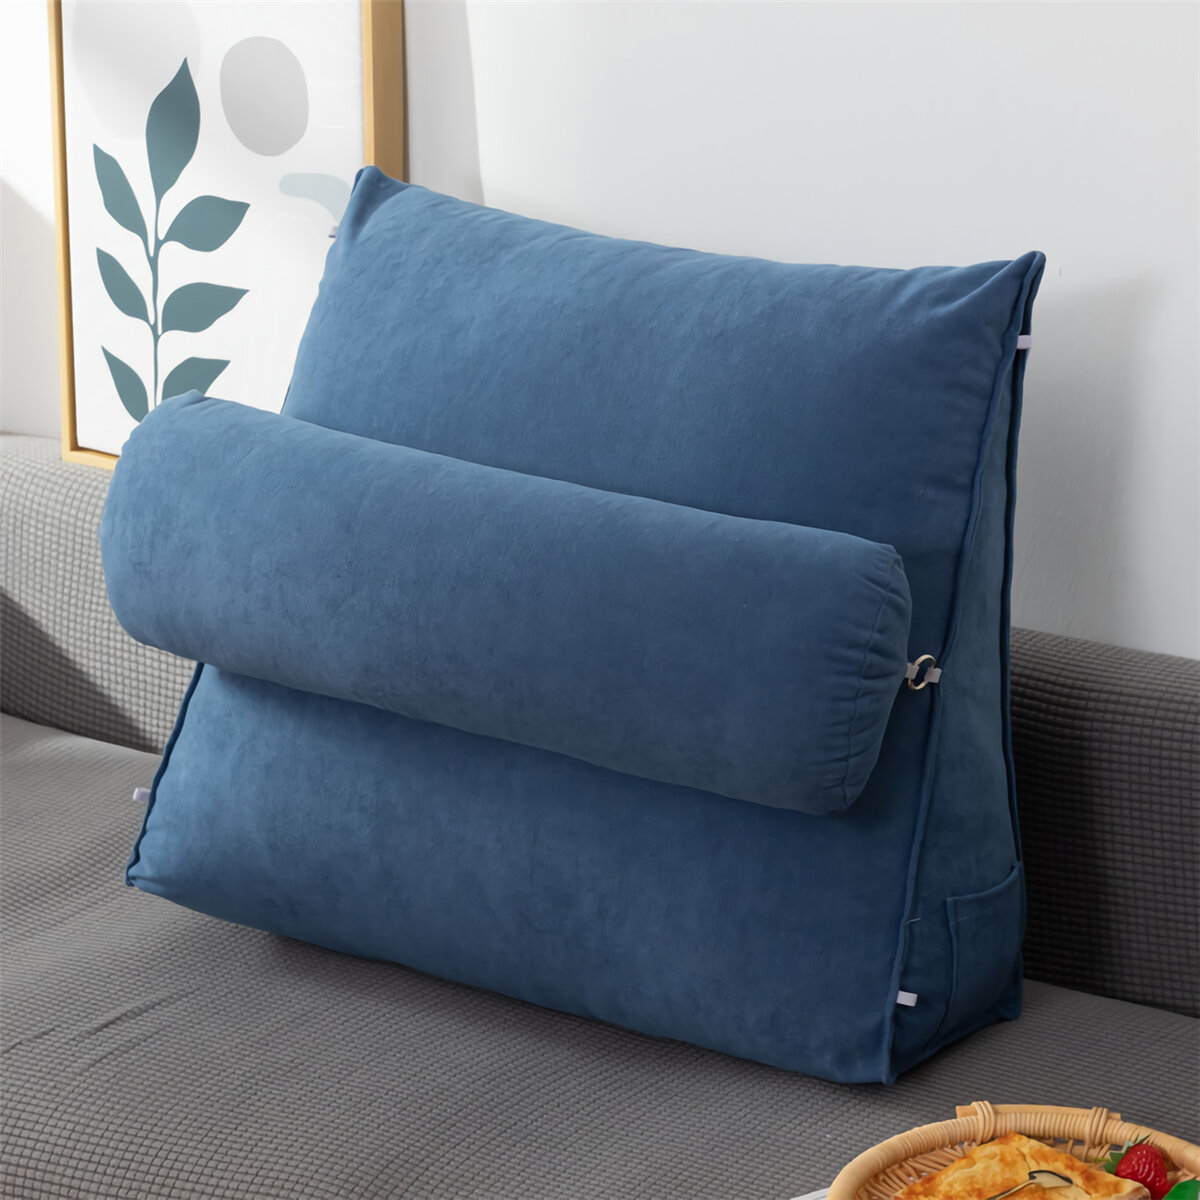 Sofa Rücken Kissen Bett Couch Sitzauflage Pad Taille Unterstützung Rückenlehne mit Kopfkissen Home Office Möbel Dekorati